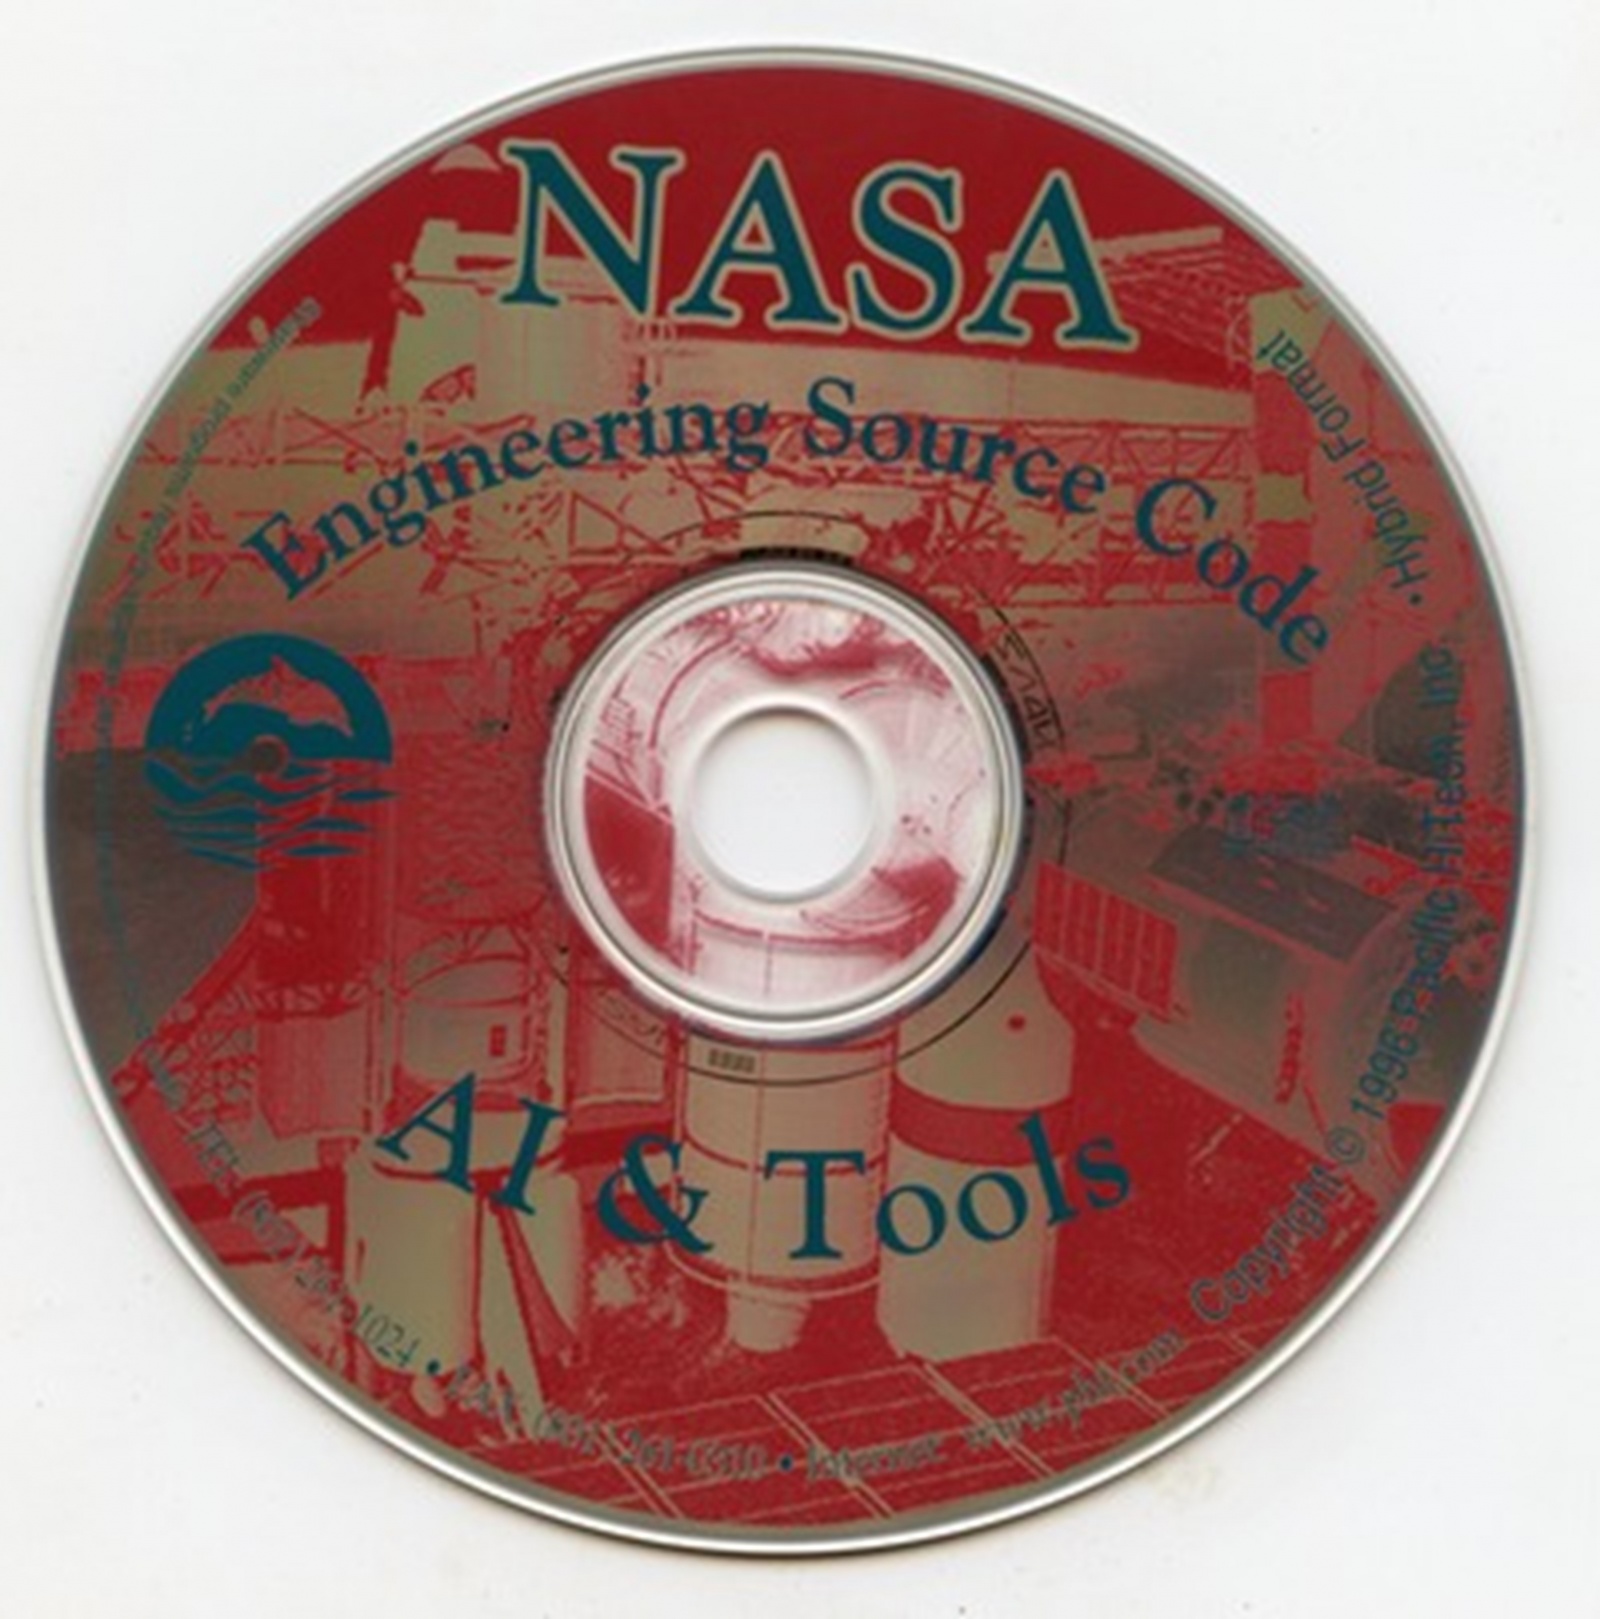 Open-source прямиком из NASA за 1996 год (источник изображения)